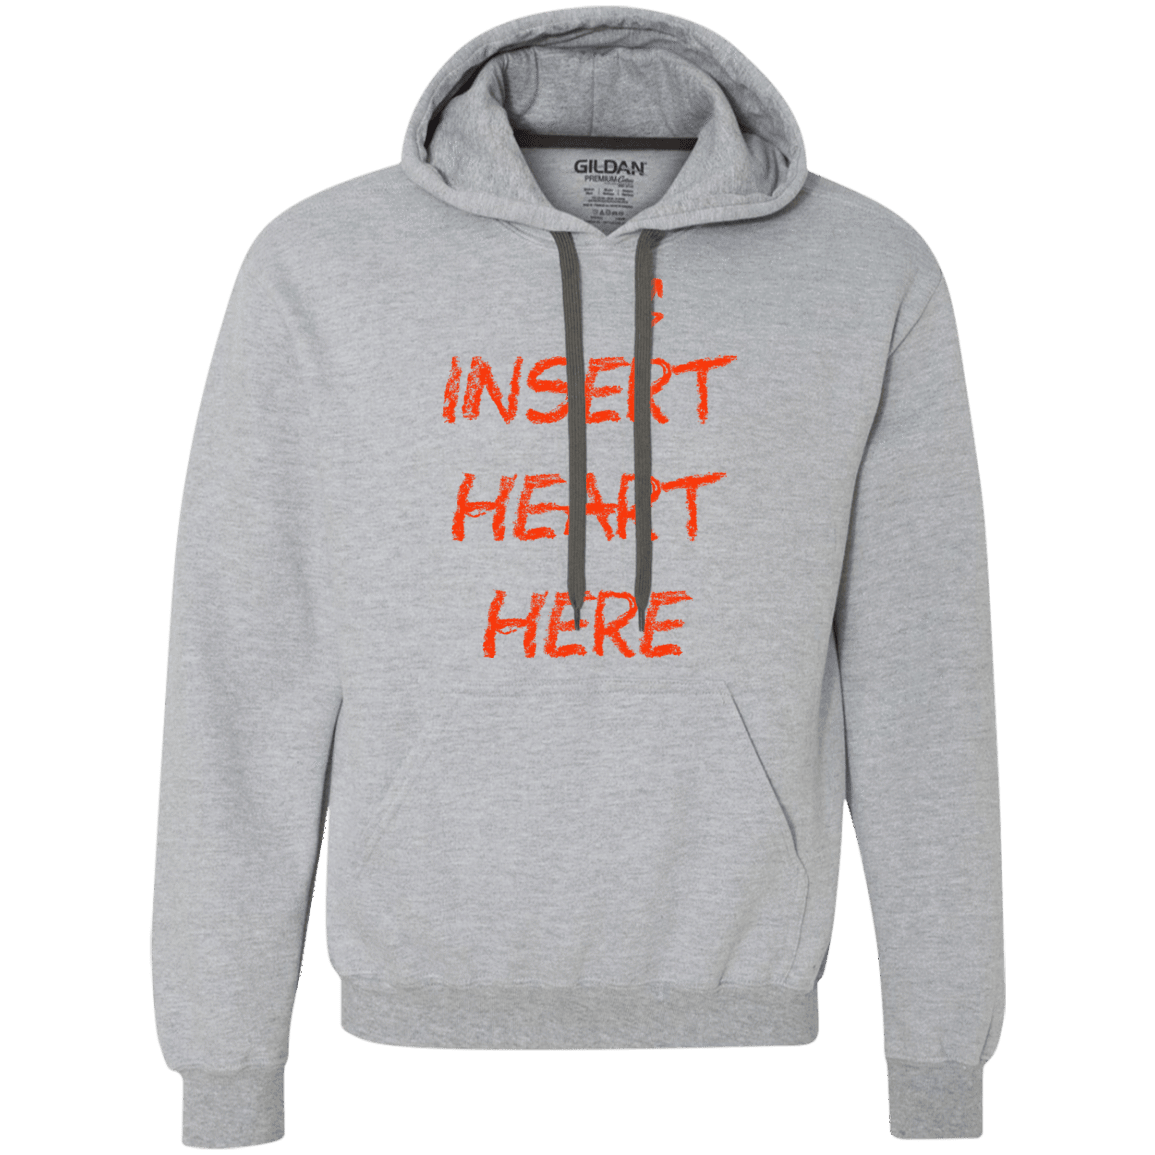 Sweatshirts Sport Grey / S Insert Heart Here Premium Fleece Hoodie